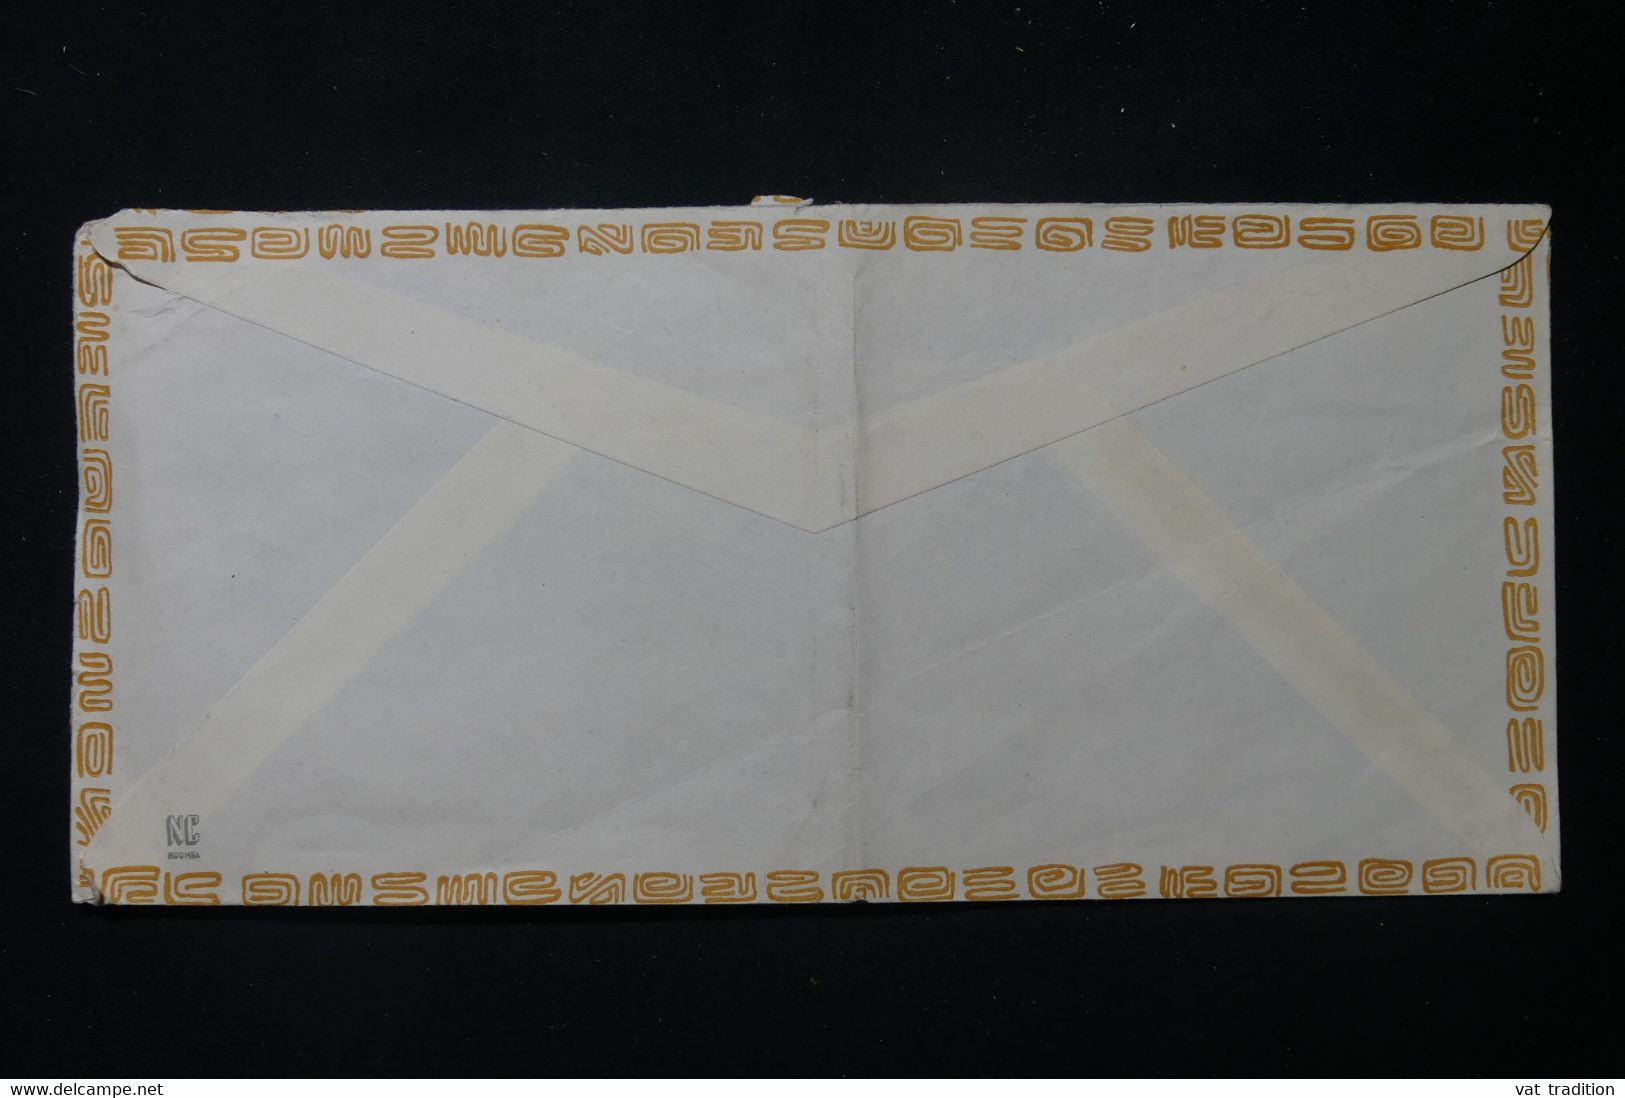 NOUVELLE CALÉDONIE - Enveloppe De Noumea Pour Paris En 1970 - L 88736 - Covers & Documents